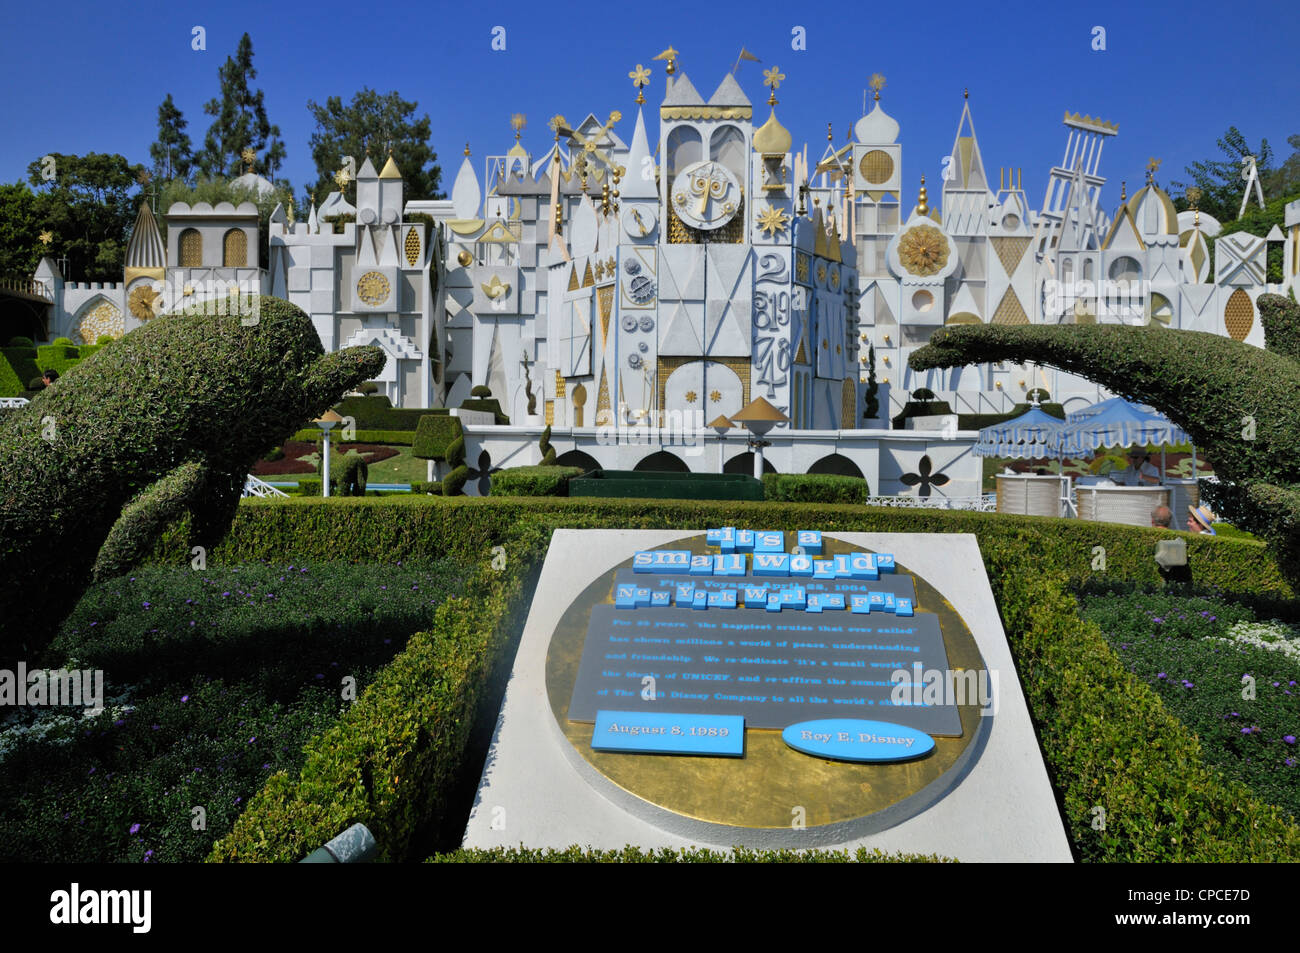 Fassade des "Es ist eine kleine Welt" im Disneyland zeigen Formschnitt Kreaturen in der Nähe des Eingangs Stockfoto